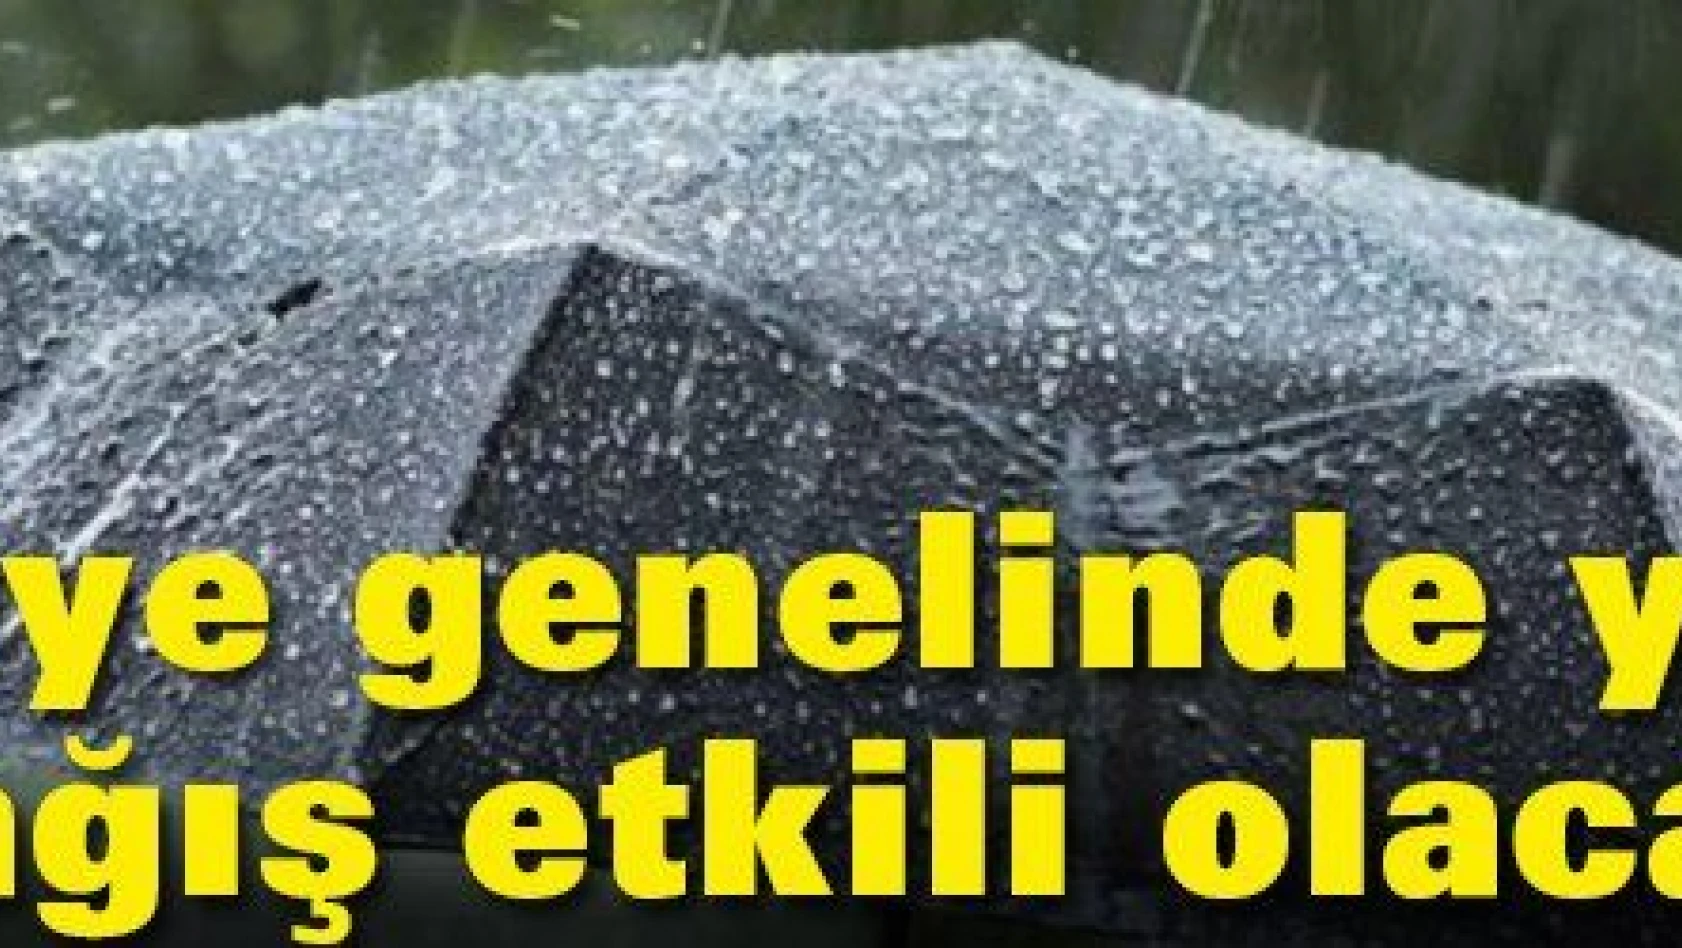 Türkiye genelinde bir hafta süreyle yoğun yağış etkili olacak